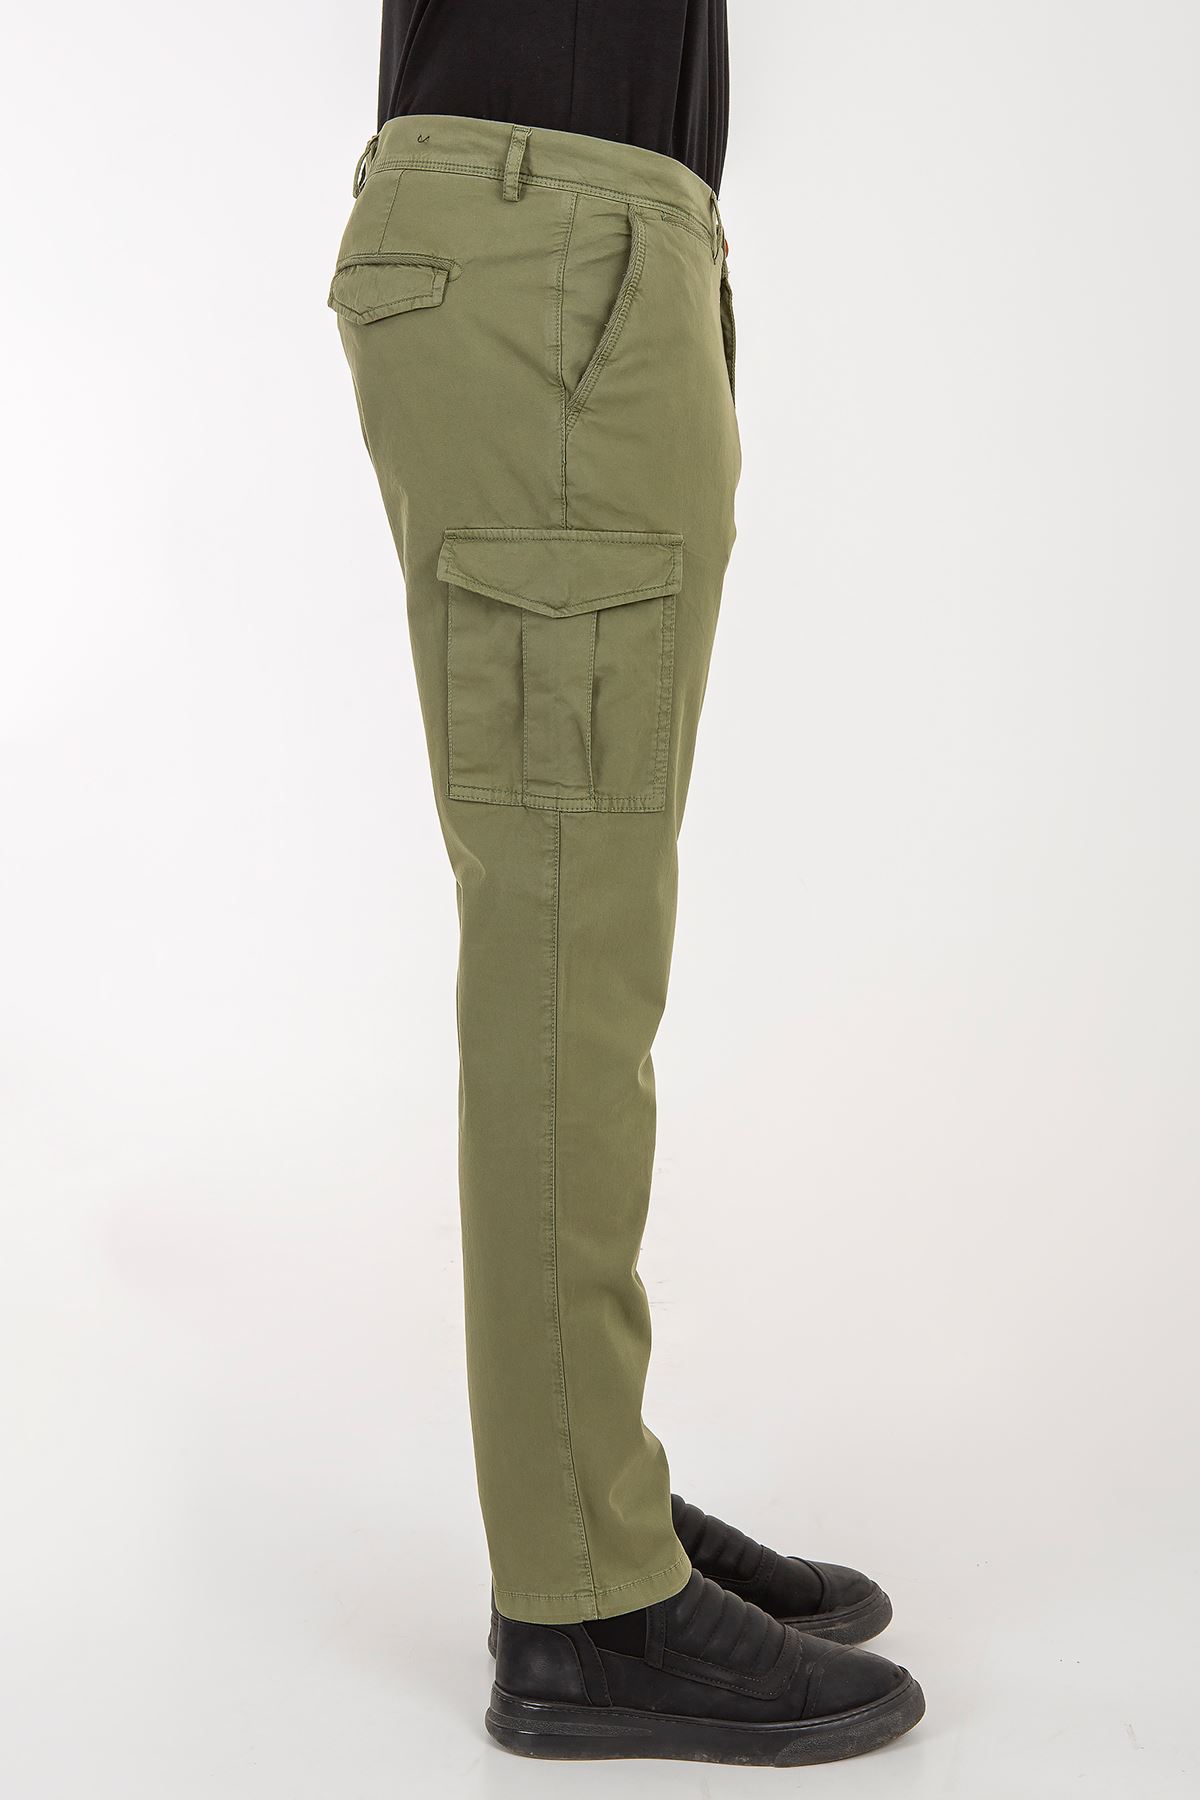 Fitz Roy Erkek Yeşil Kargo Stalker Pantolon 